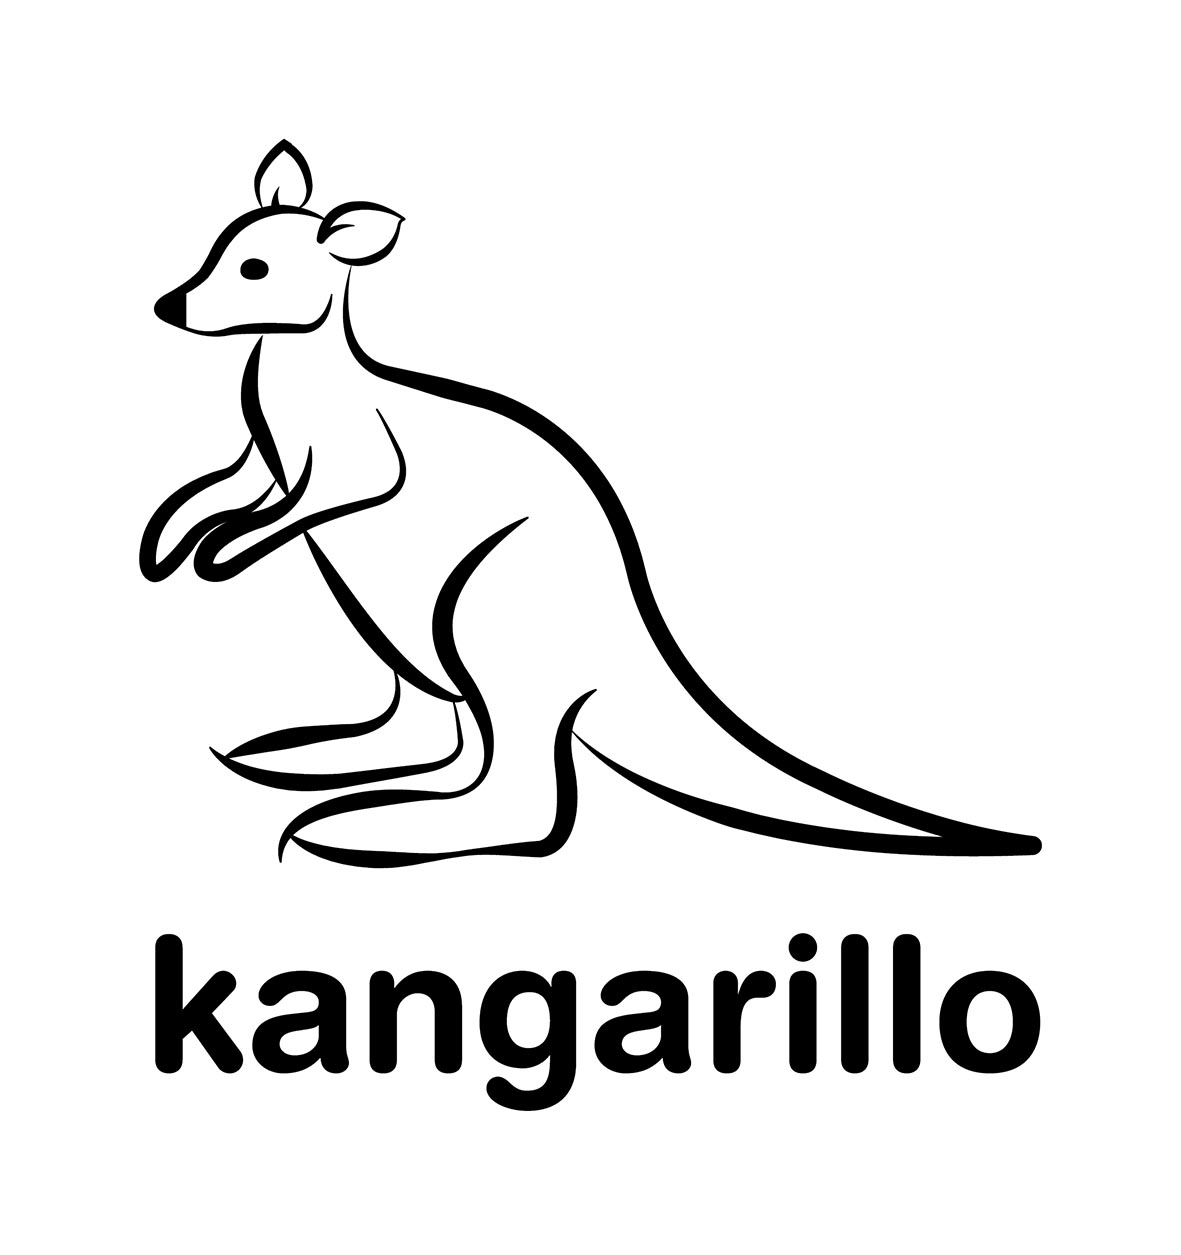 Handy Dryers Kangarillo Stainless Steel Hand Dryer 